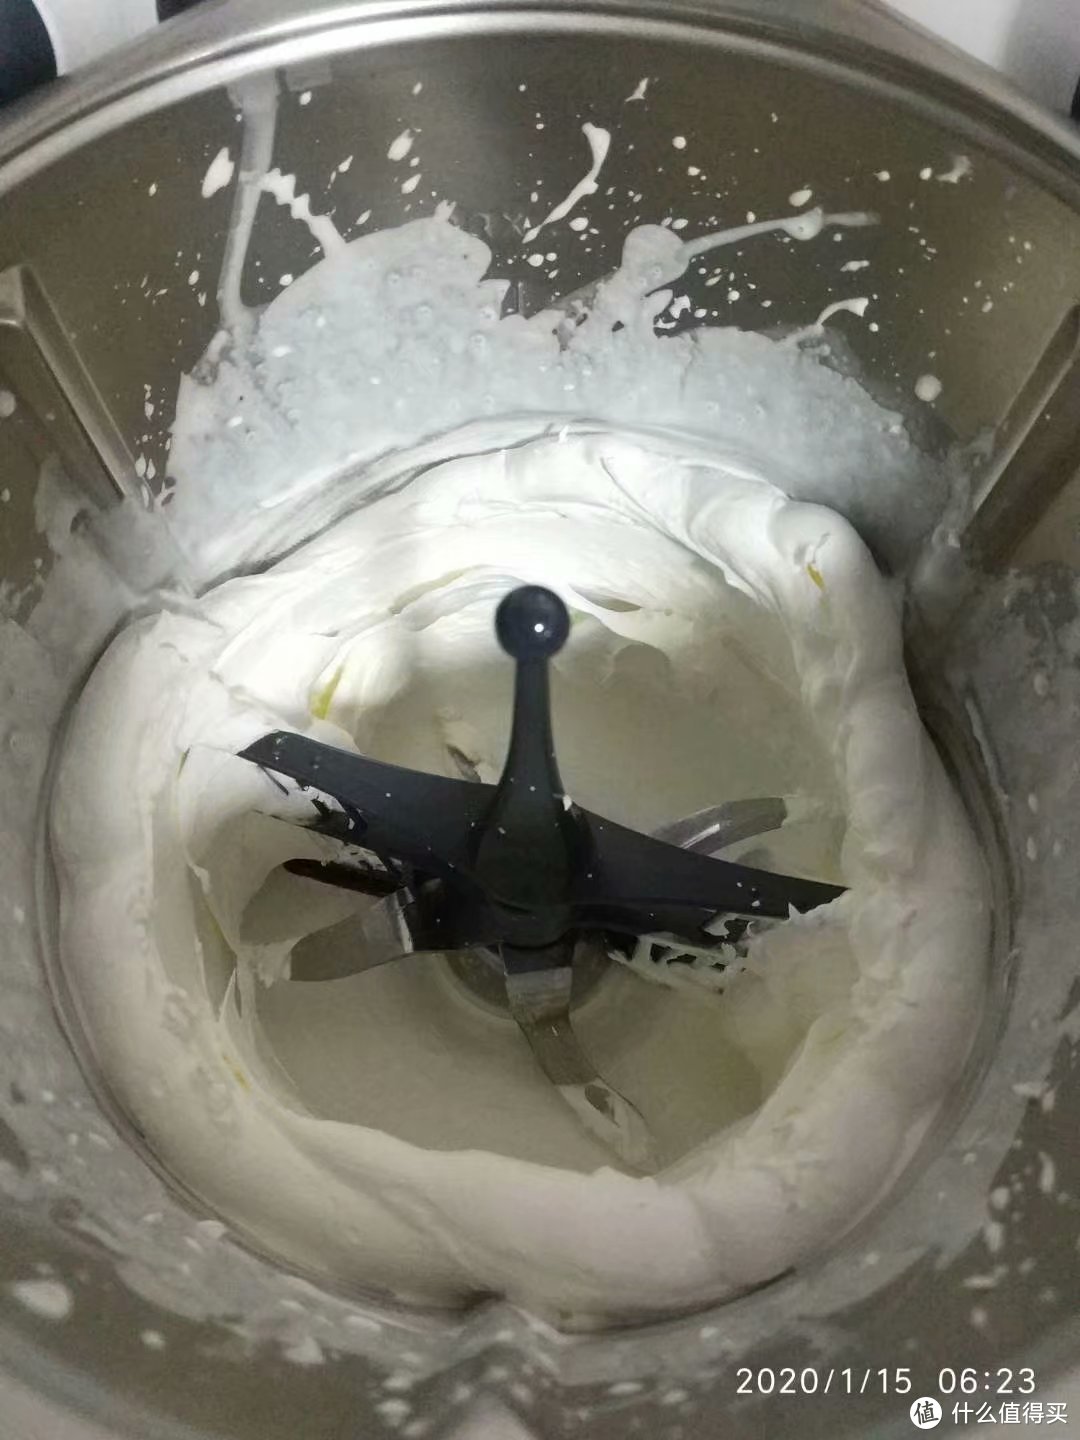 2分20秒淡奶油就变成半凝固可直接食用的奶油了